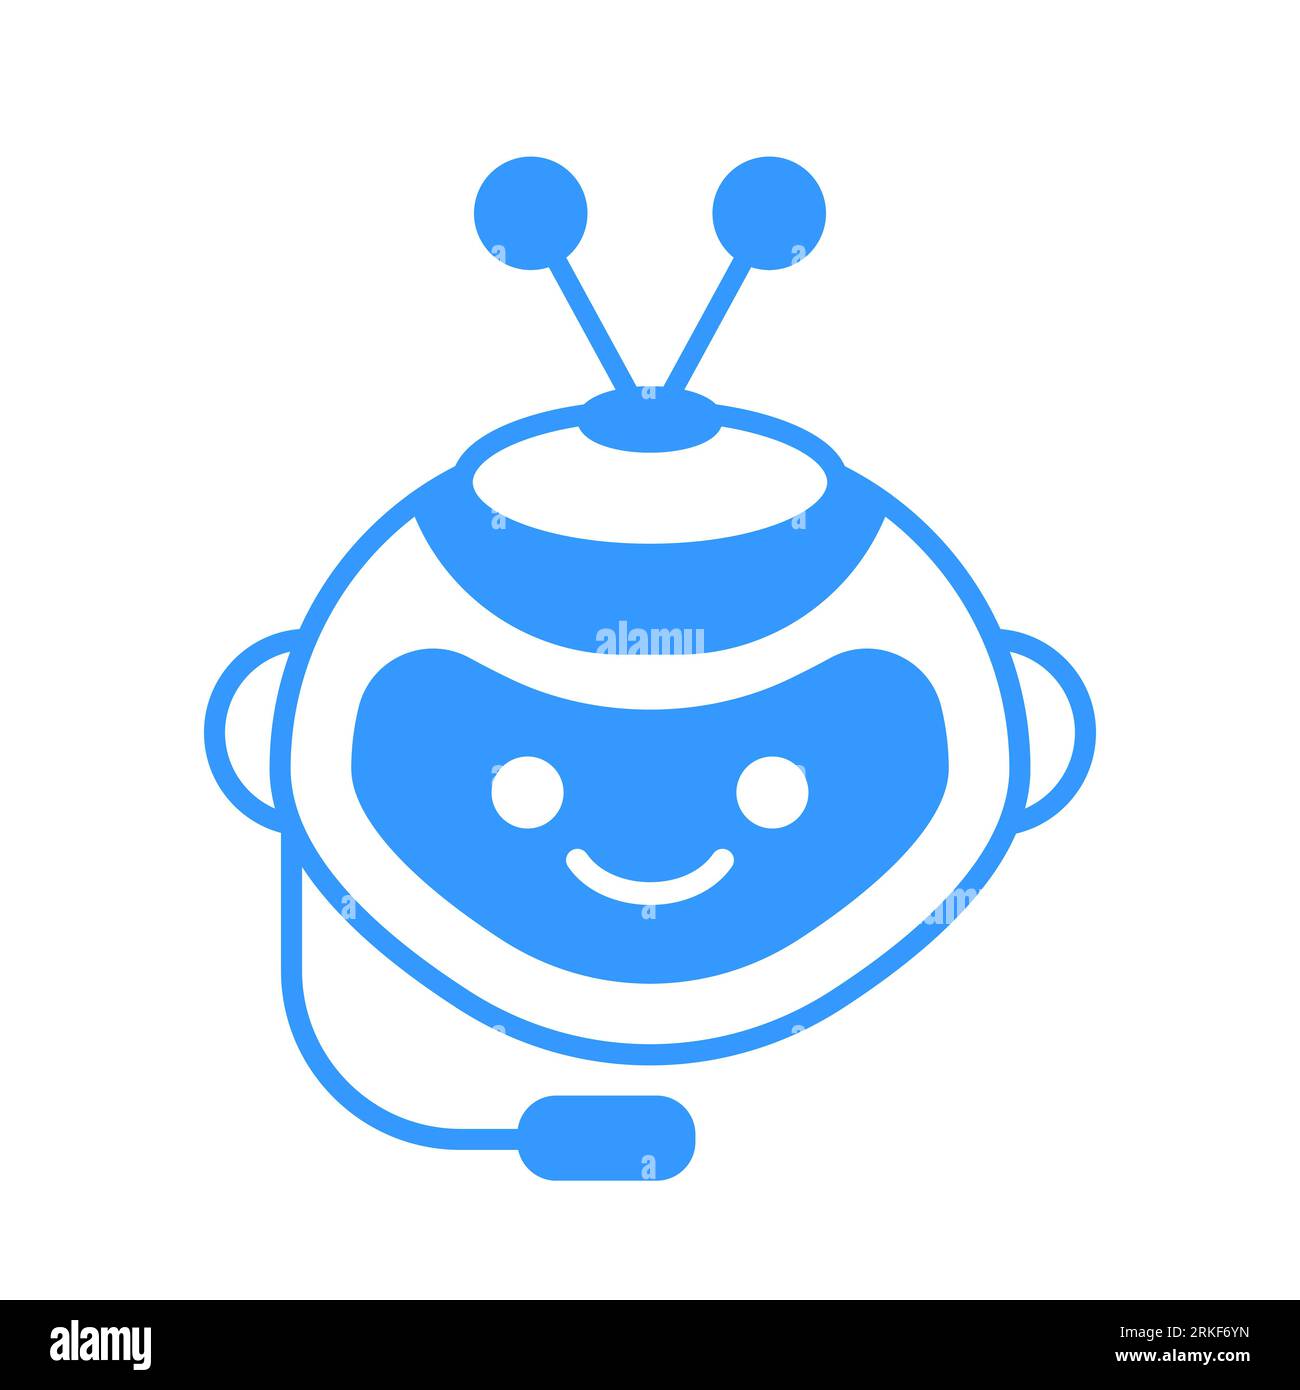 Icône De Robot. Chat Bot Signe Pour Le Concept De Service D